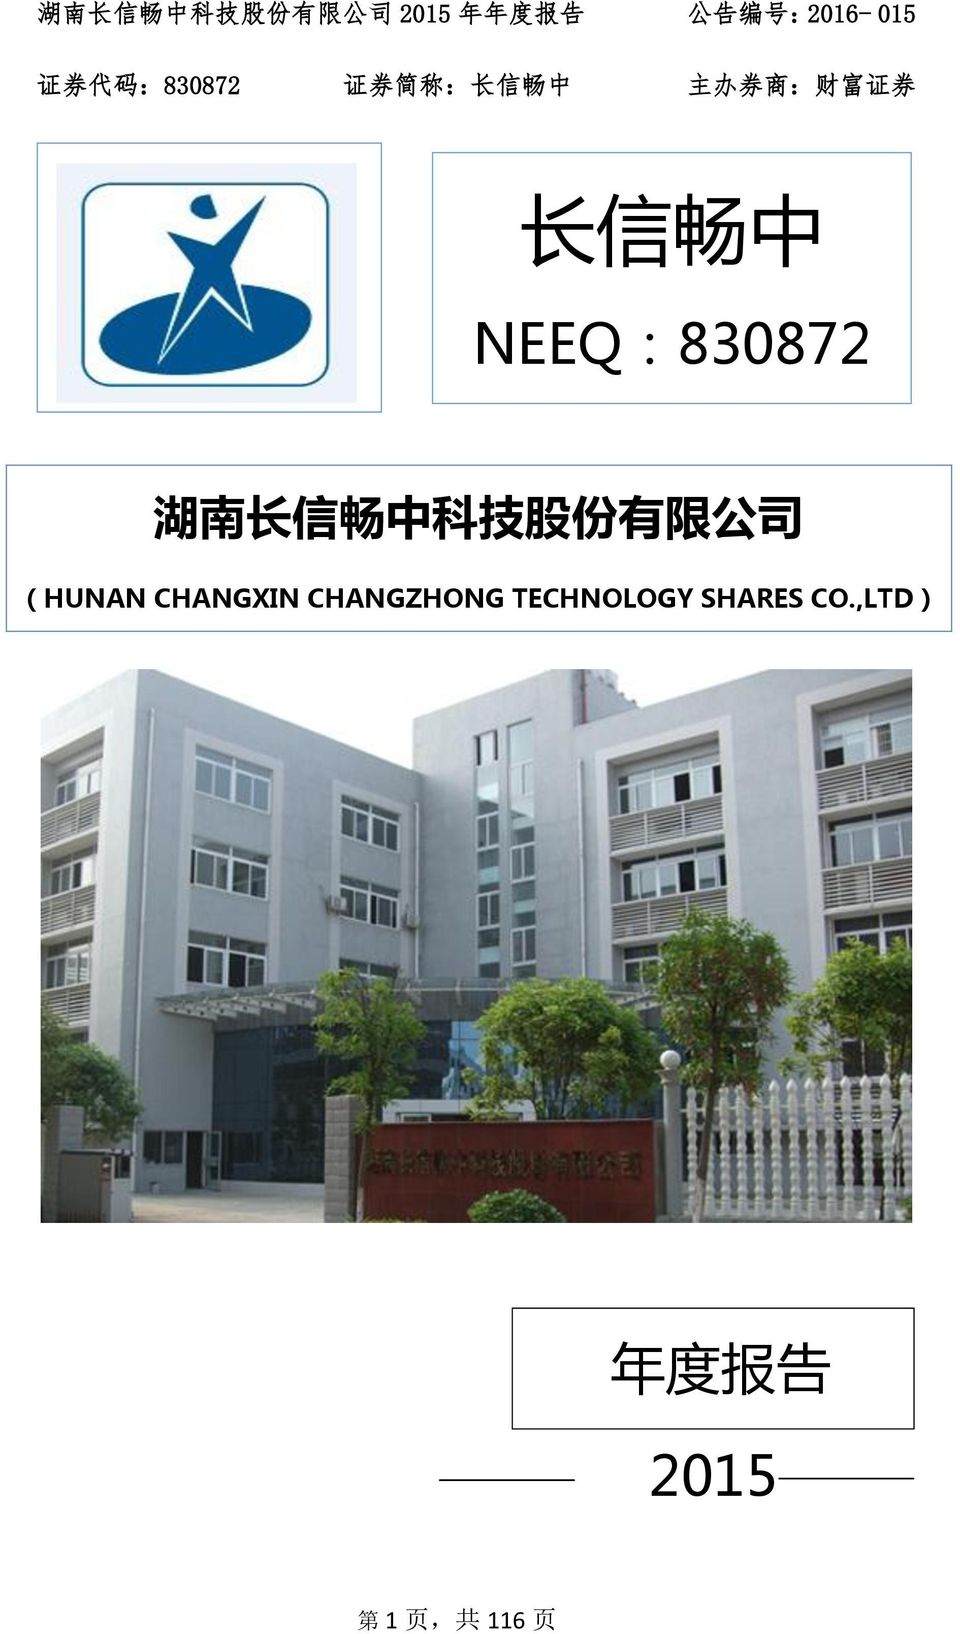 NEEQ:830872 湖 南 长 信 畅 中 科 技 股 份 有 限 公 司 (HUNAN CHANGXIN